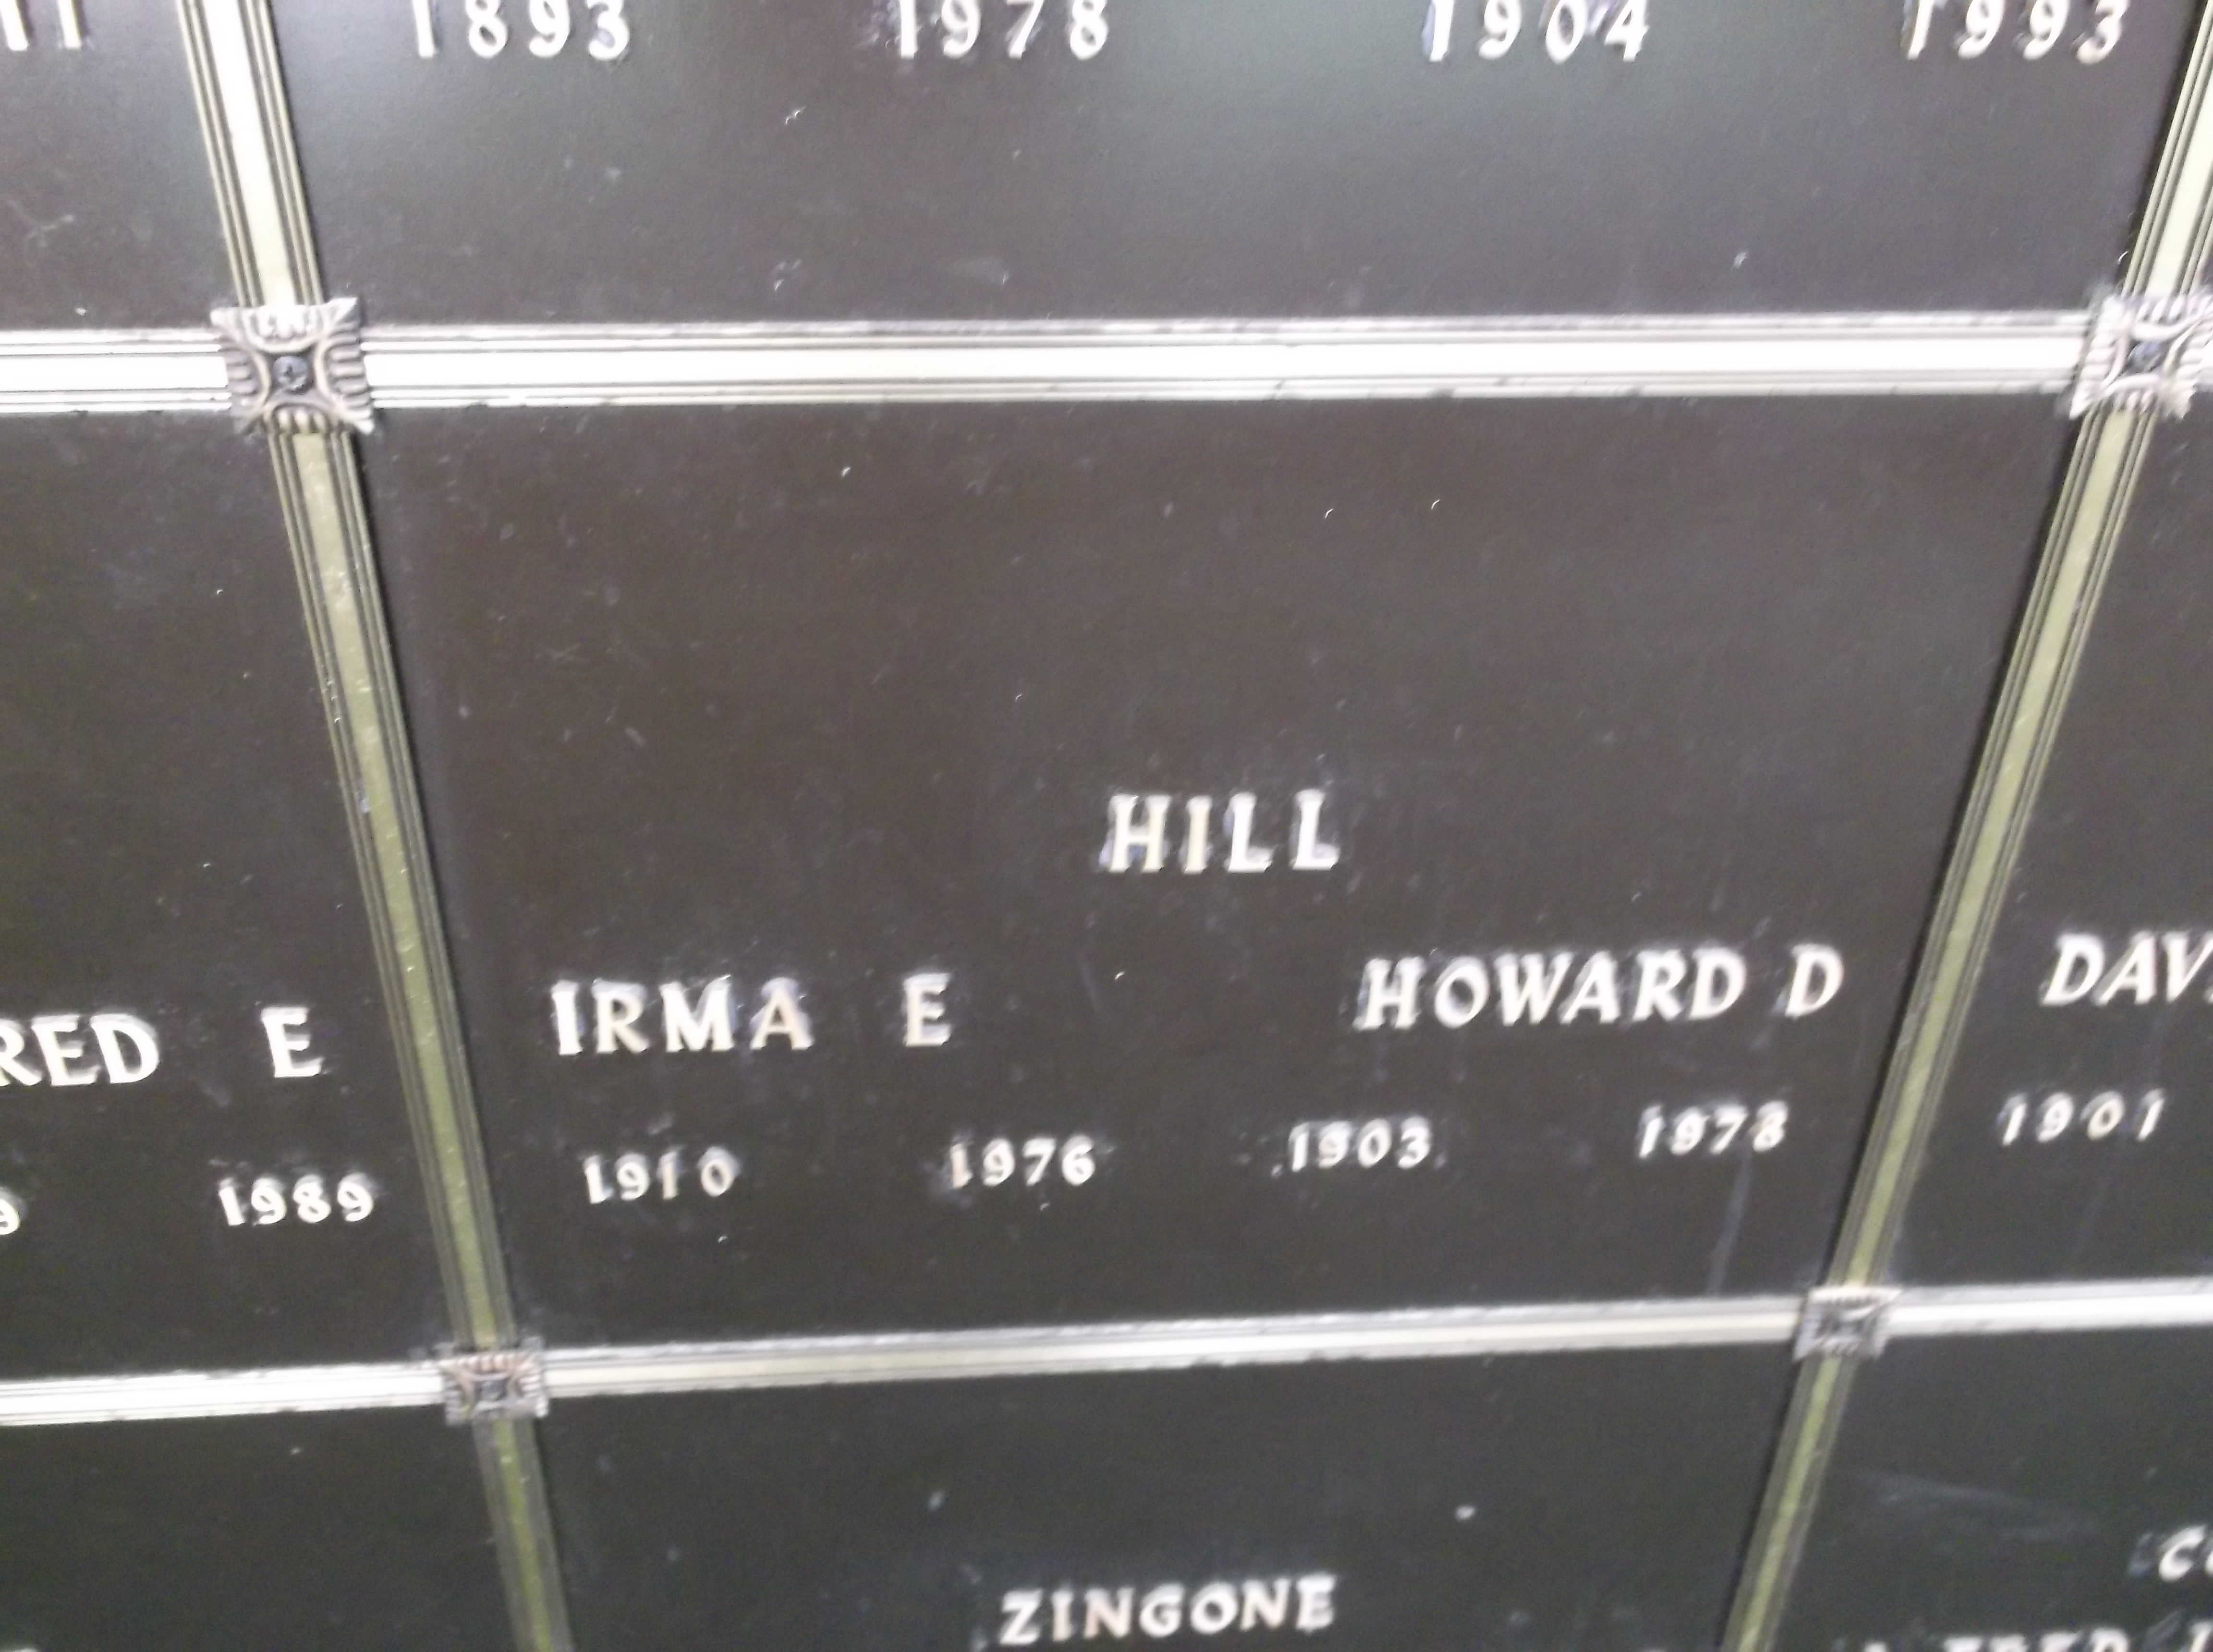 Howard D Hill